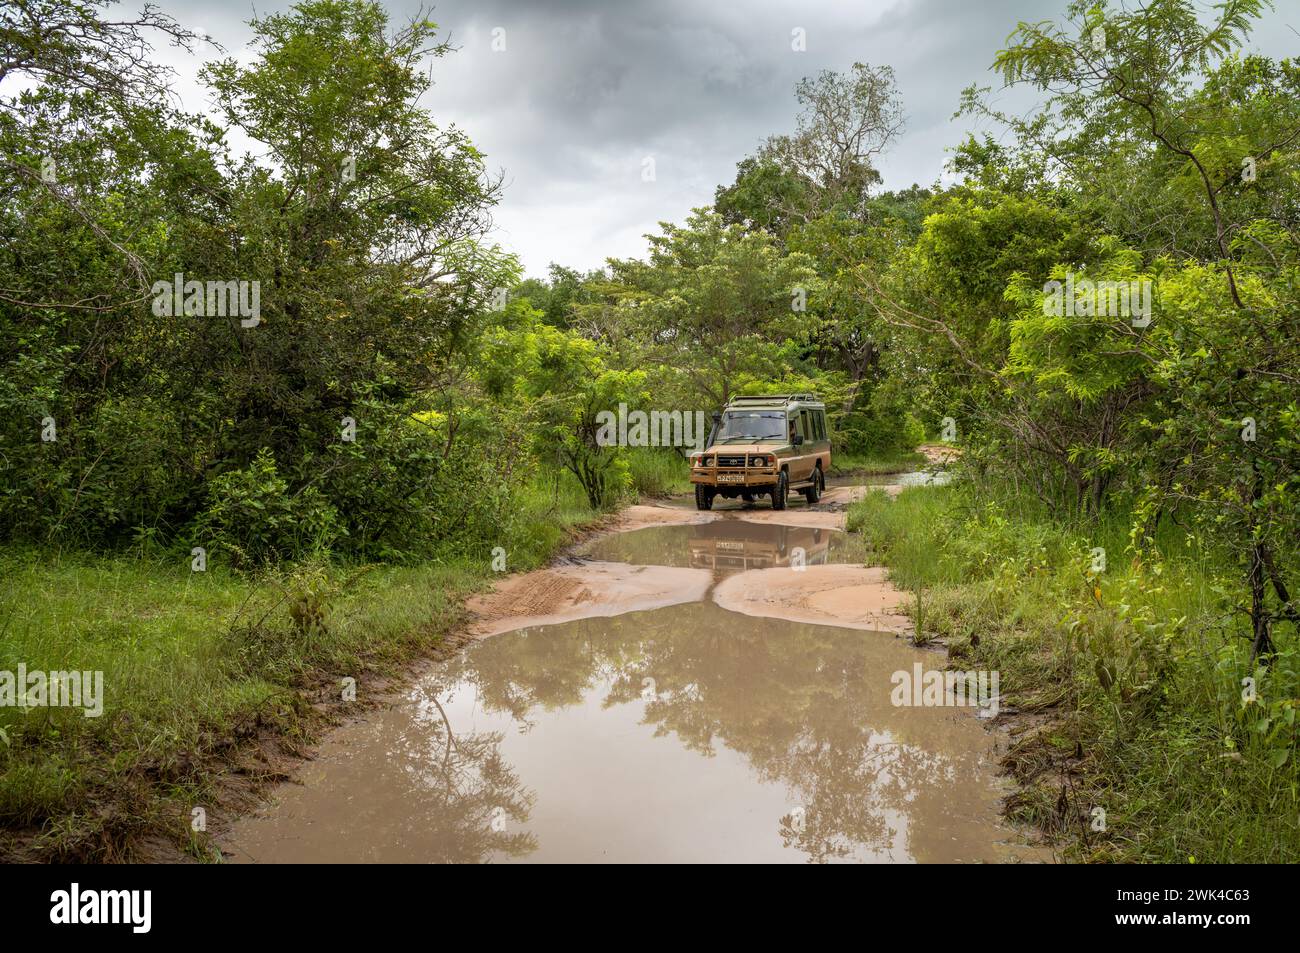 Un véhicule 4x4 roule le long d'une piste inondée lors d'un safari à l'intérieur du parc national de Nyerere (réserve de gibier Selous) en Tanzanie. Banque D'Images